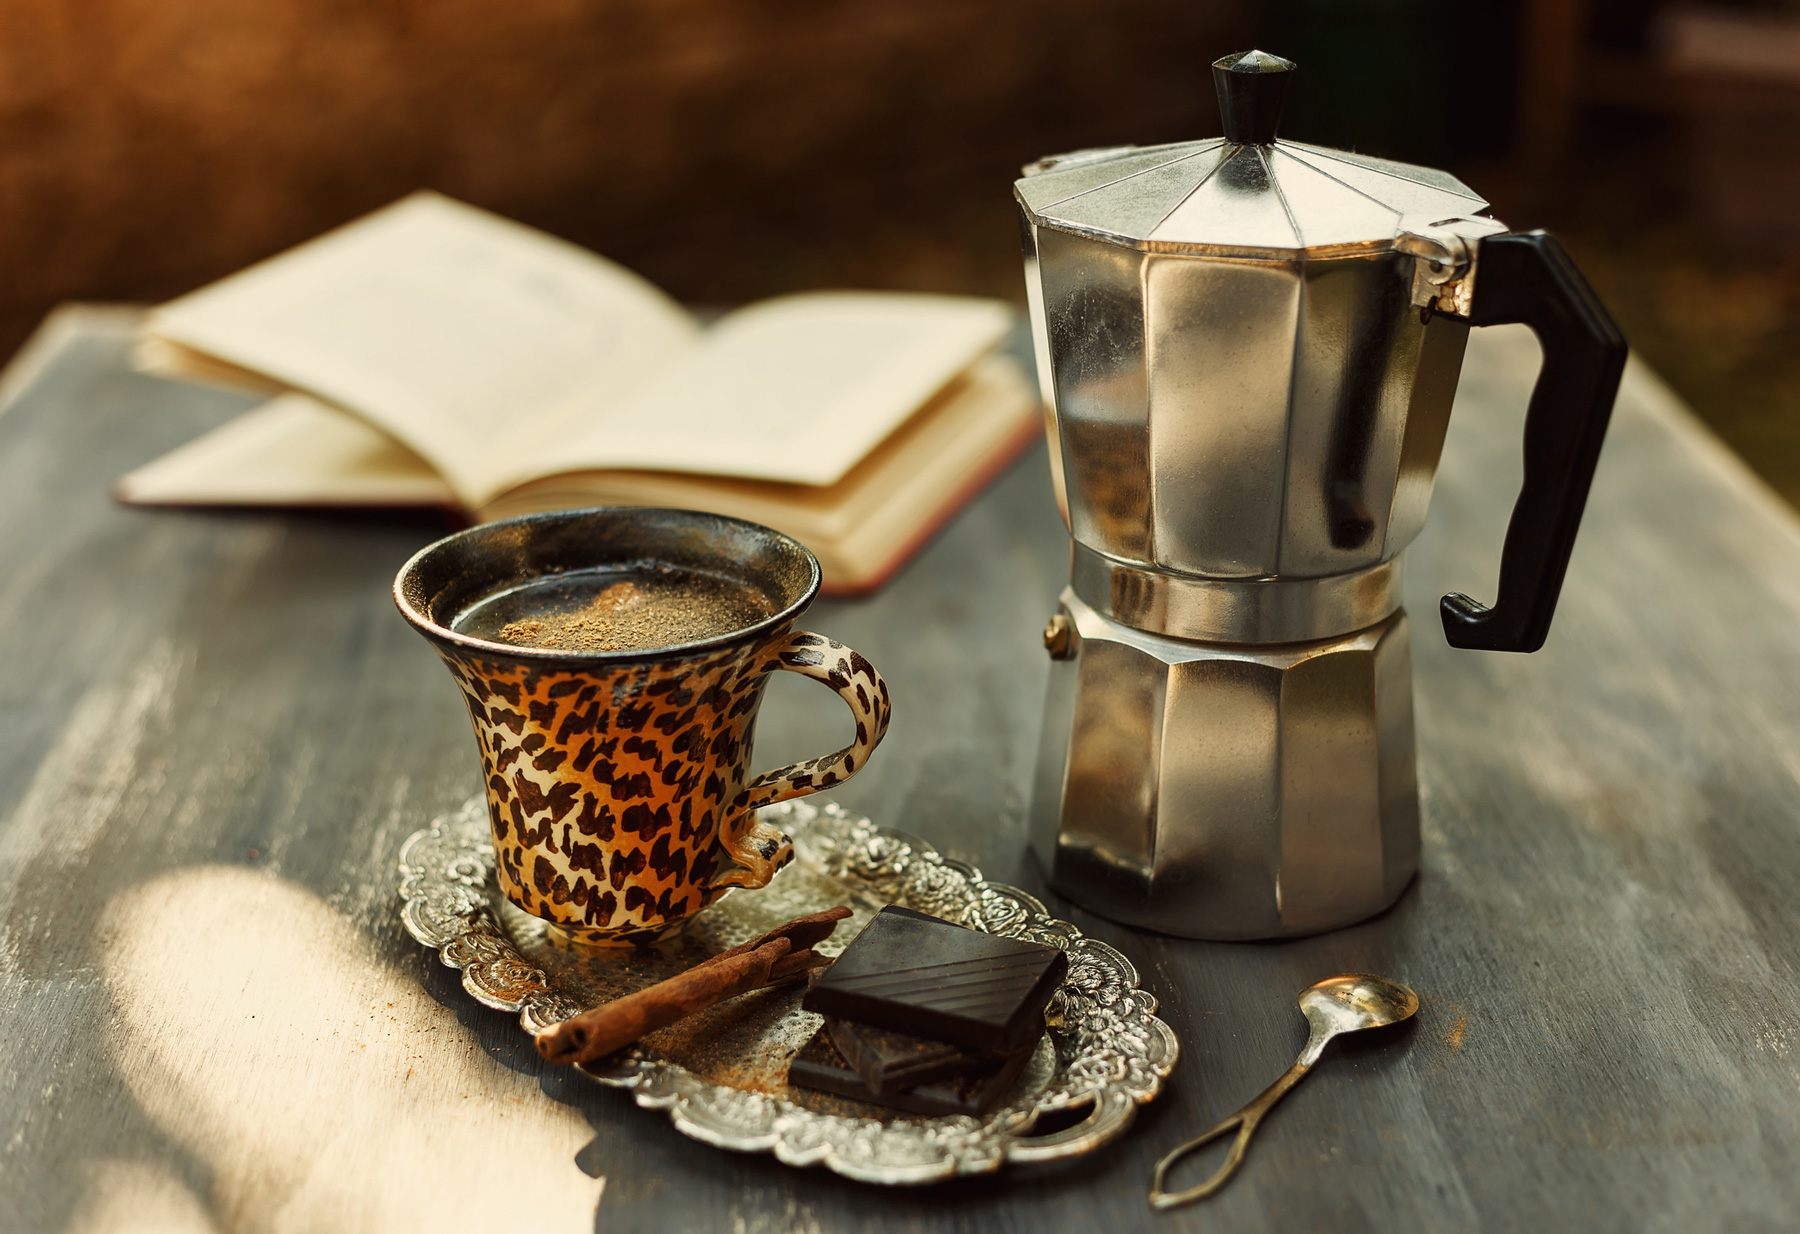 摩卡壺利用壓力推送熱水穿過咖啡粉，成為製作咖啡更快速且更容易的爐式咖啡壺，也因此很快成為義大利最受歡迎的家用咖啡沖煮法。（圖片來源：Dreamstime／典匠影像）